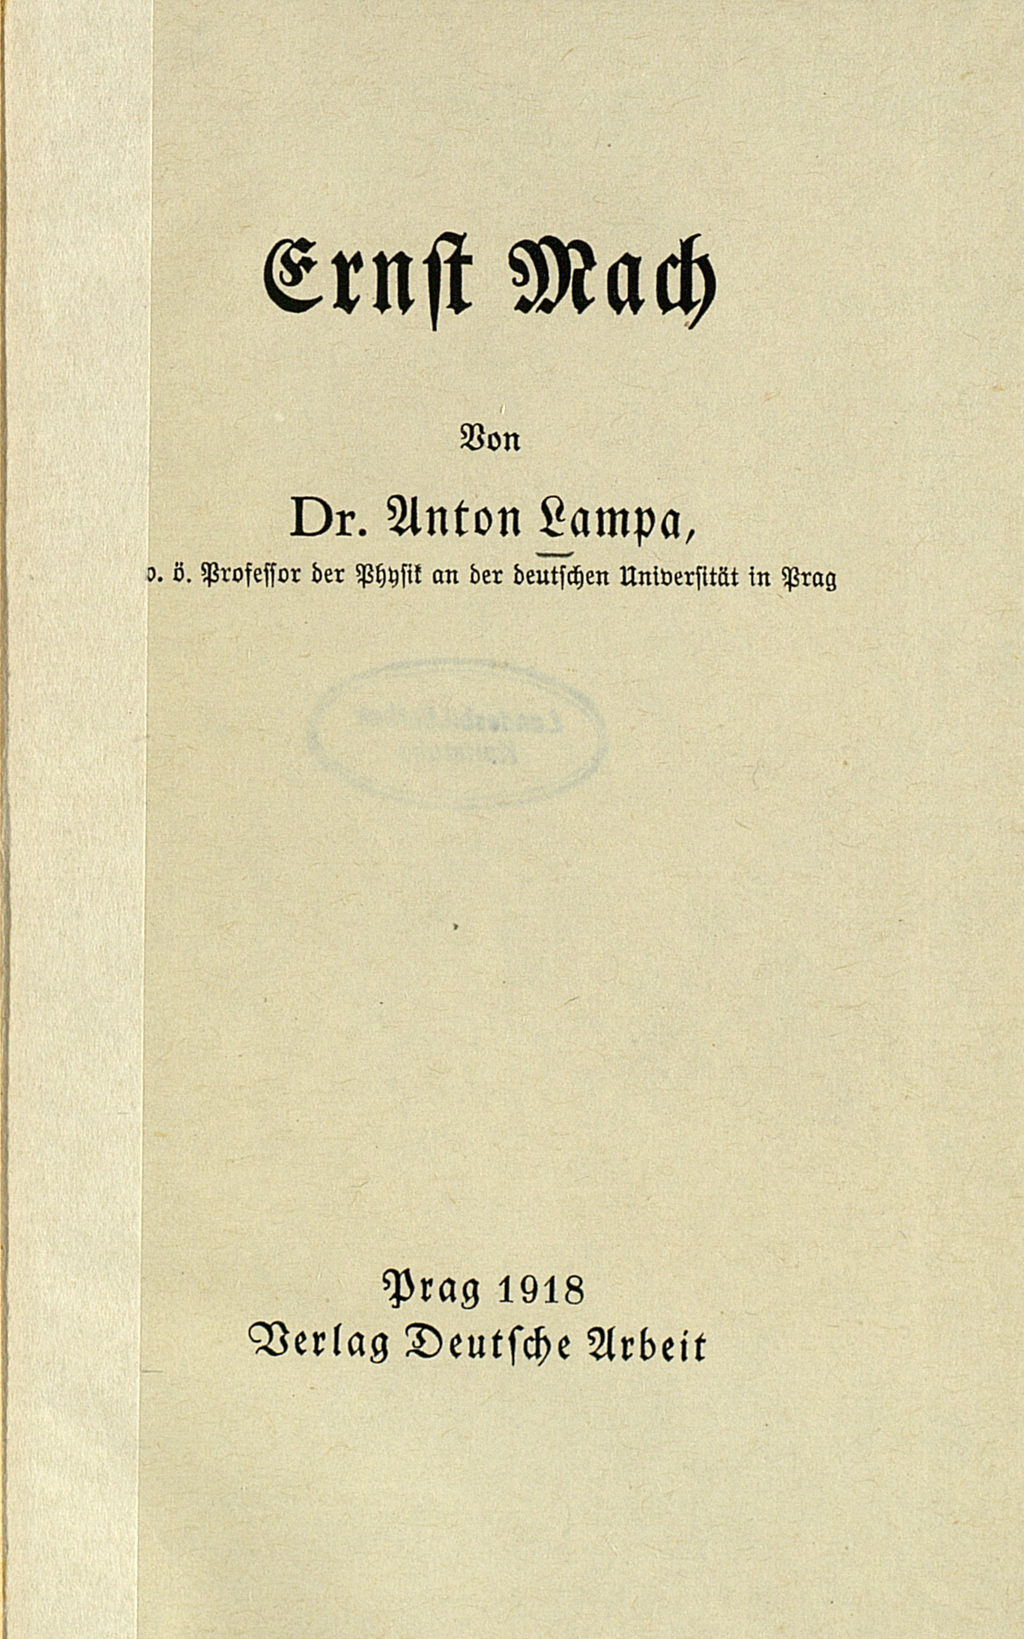 Die Abbildung zeigt das Titelblatt einer Veröffentlichung über Ernst mach von Anton Lampa aus dem Jahre 1918.   